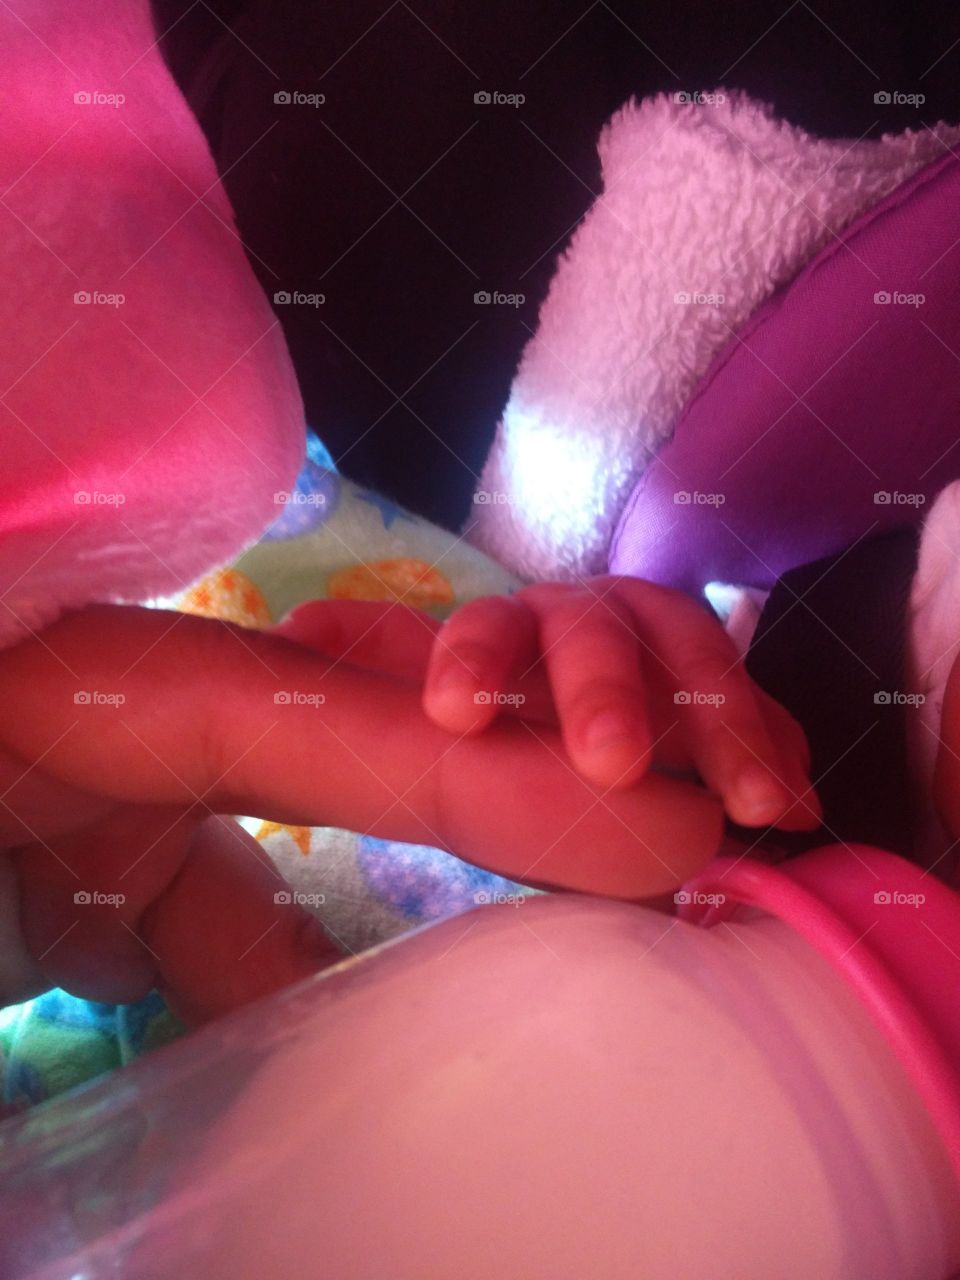 newborn hand